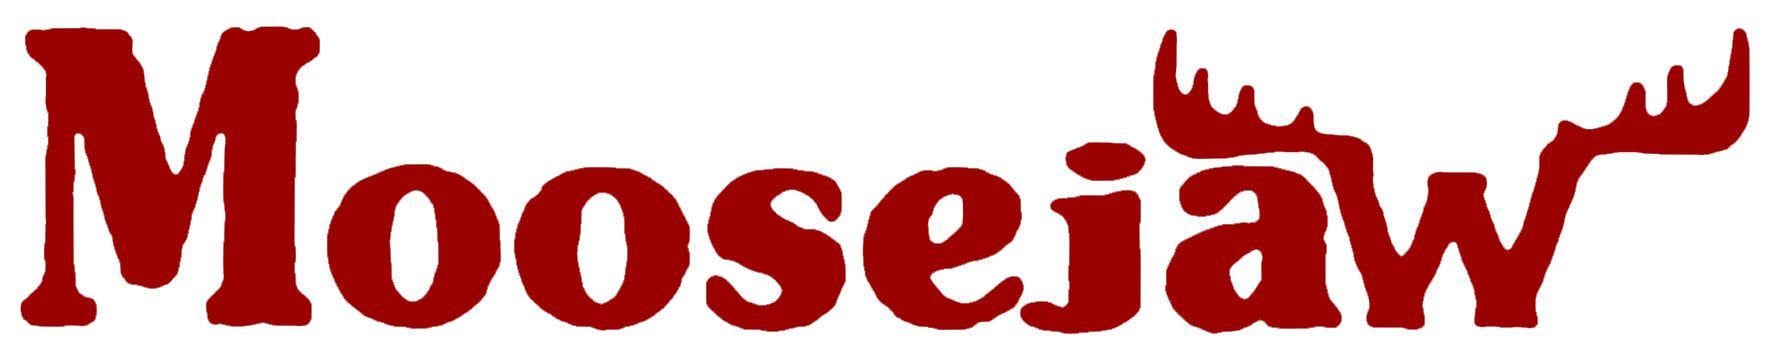 Moose Jaw Logo - MOOSEJAW LOGO RED